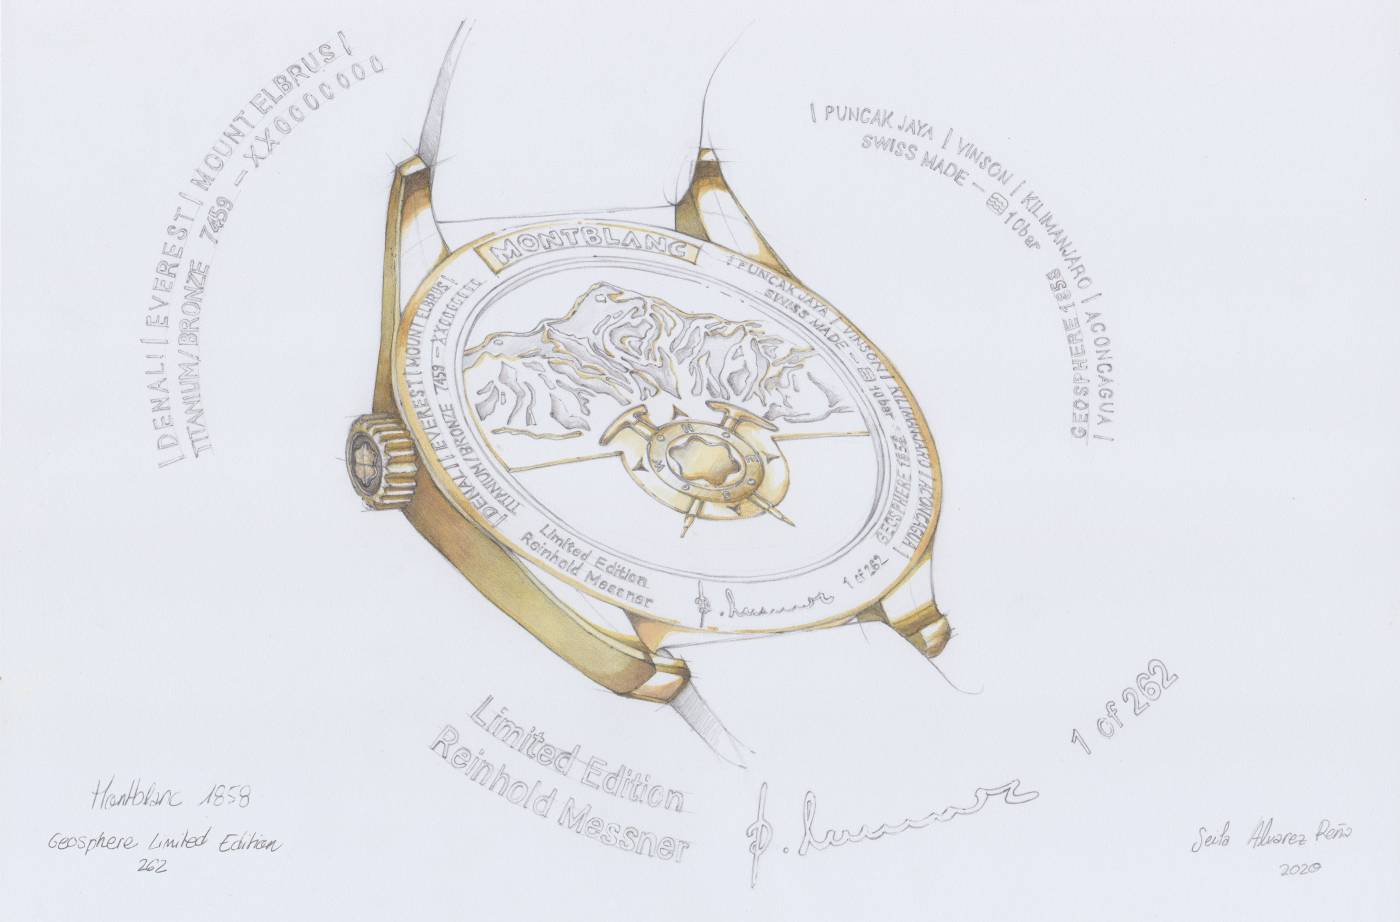 Montblanc: presentando el 1858 Geosphere Limited Edition